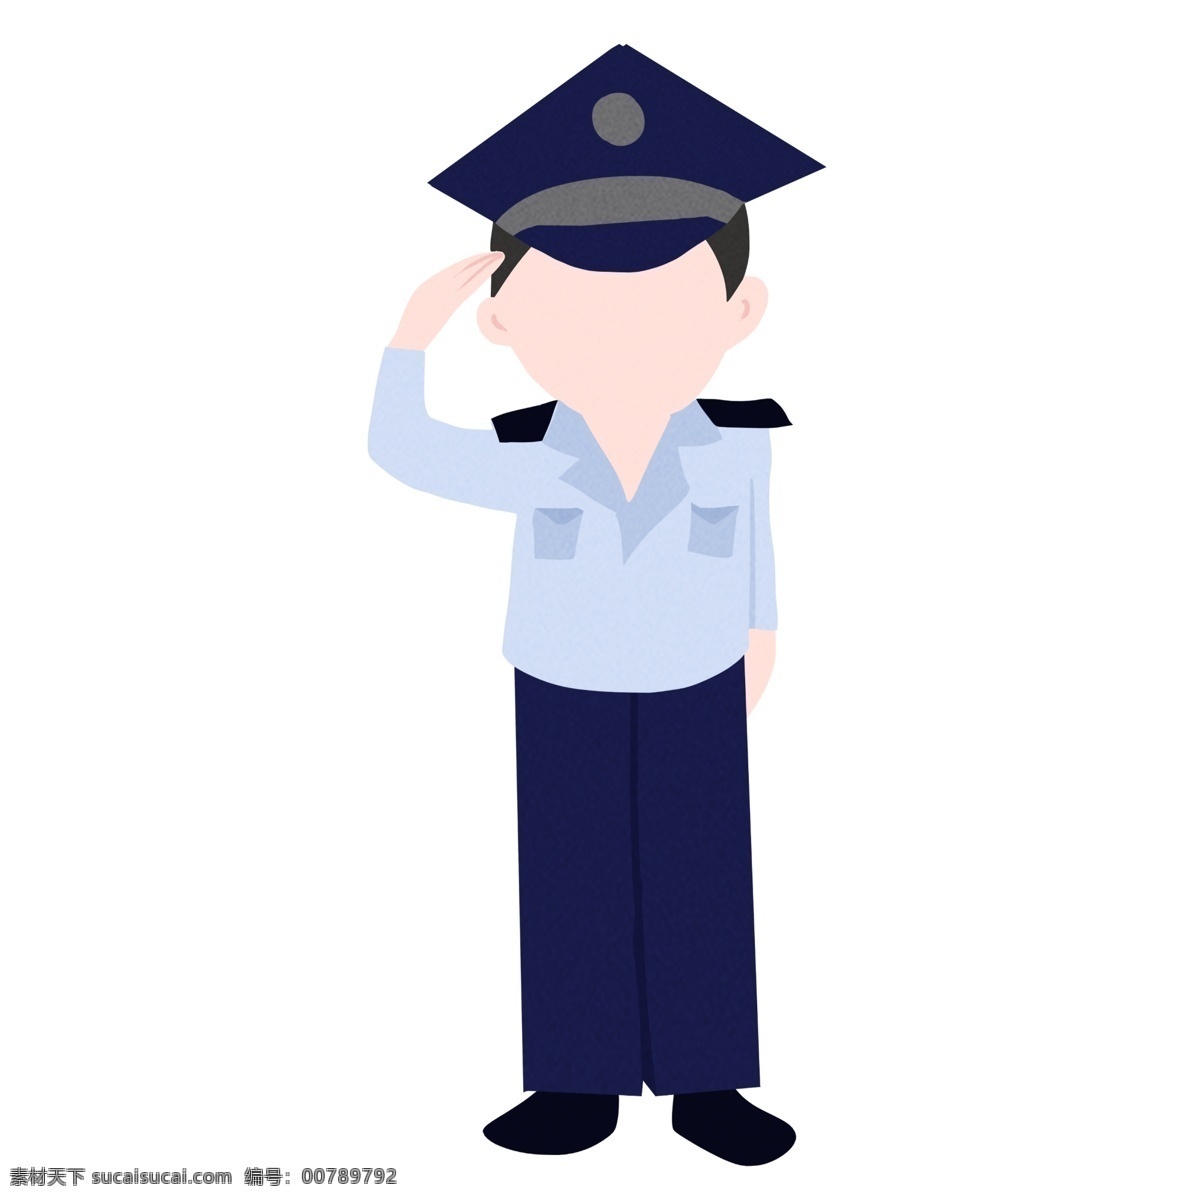 敬礼 警察 装饰 插画 敬礼的警察 执勤警察 工作的警察 警察装饰 警察插画 立体警察 保护人民警察